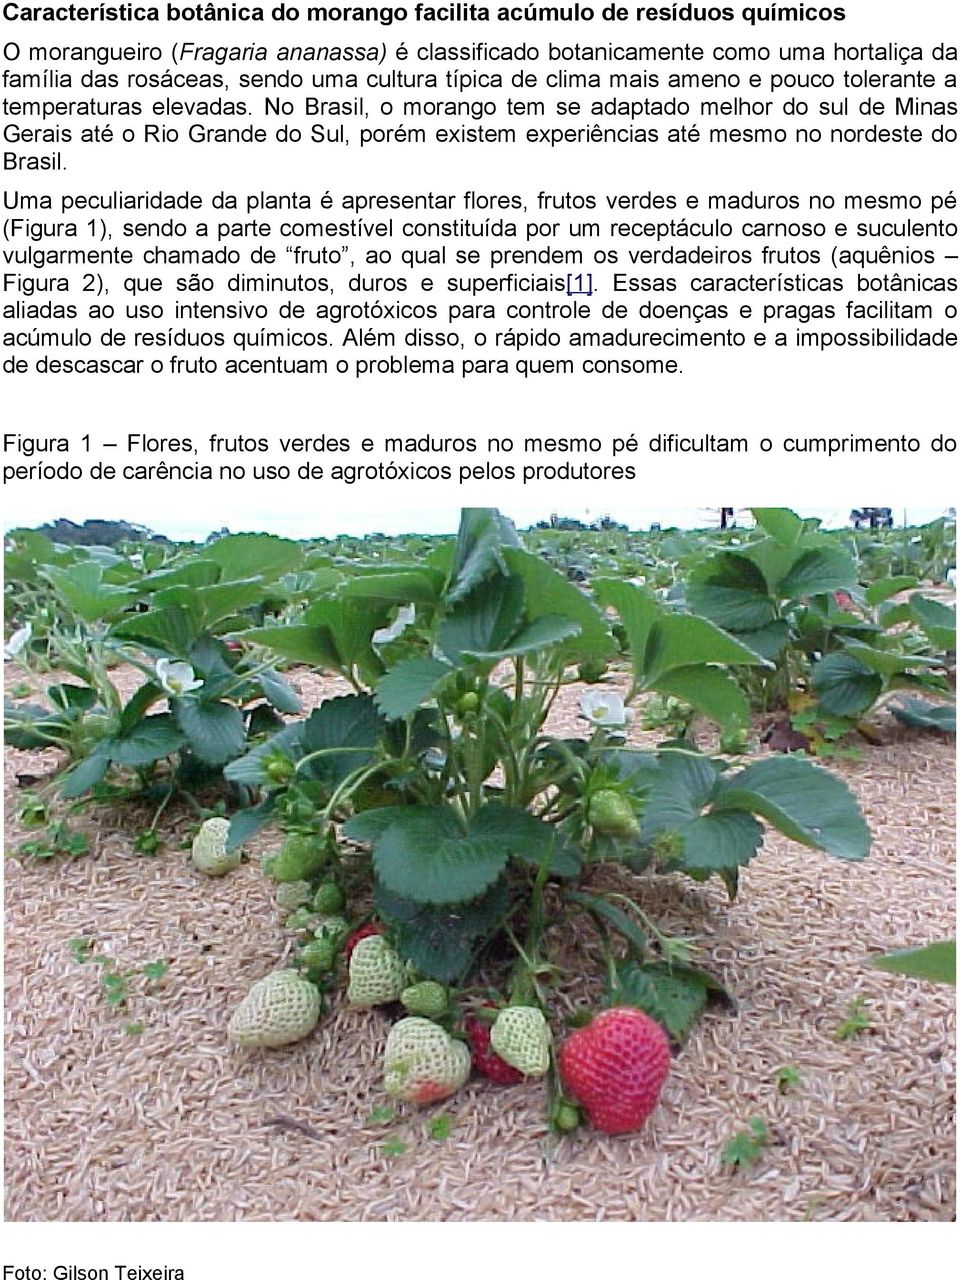 No Brasil, o morango tem se adaptado melhor do sul de Minas Gerais até o Rio Grande do Sul, porém existem experiências até mesmo no nordeste do Brasil.